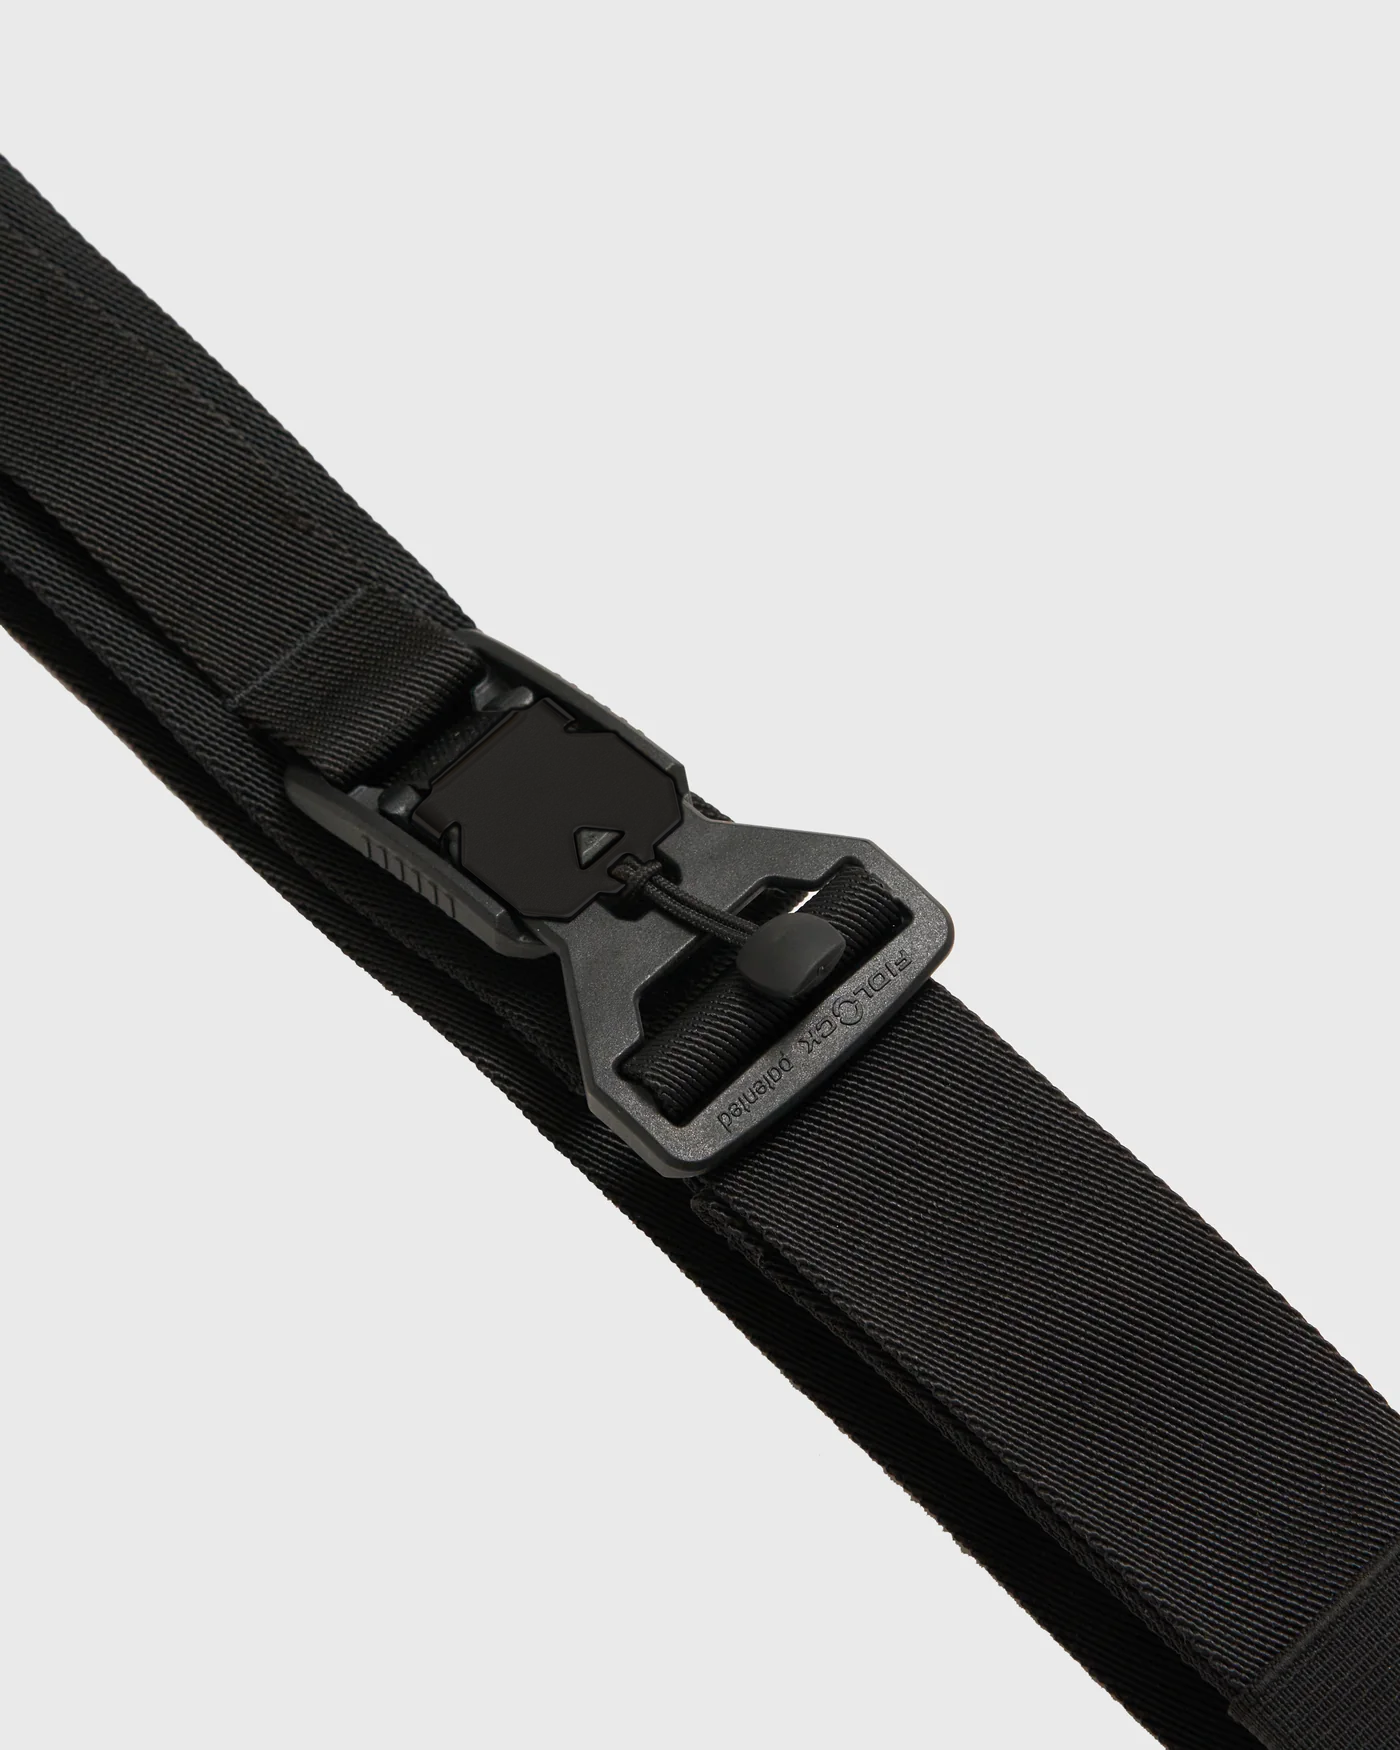 avnier-ceinture-reverb-fidlock-noir - noir